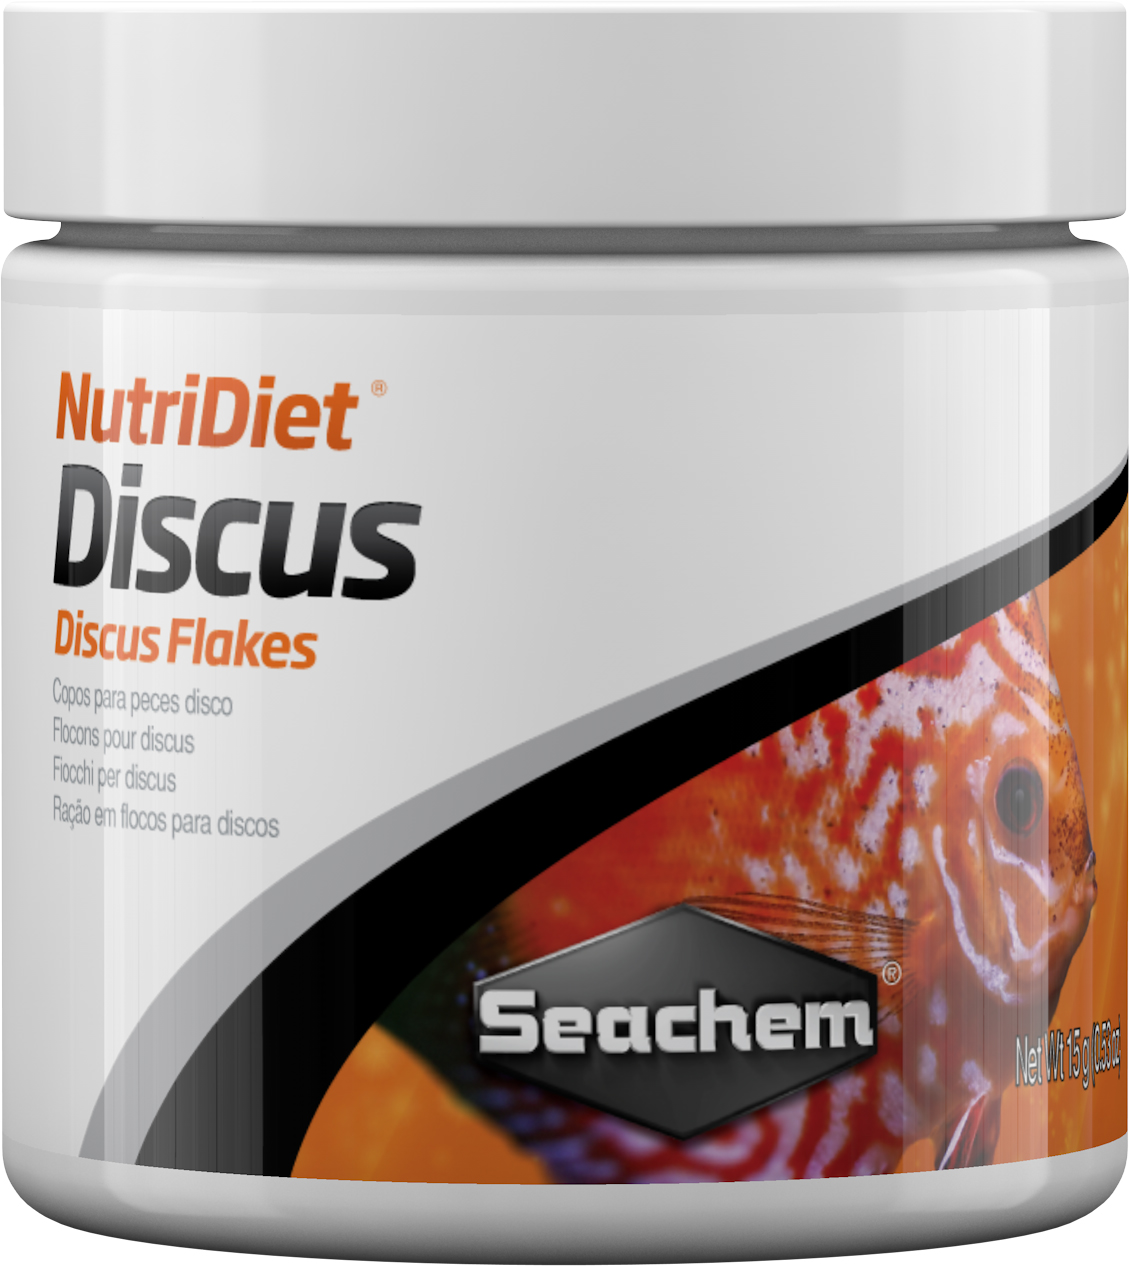 NutriDiet Discus-15 g